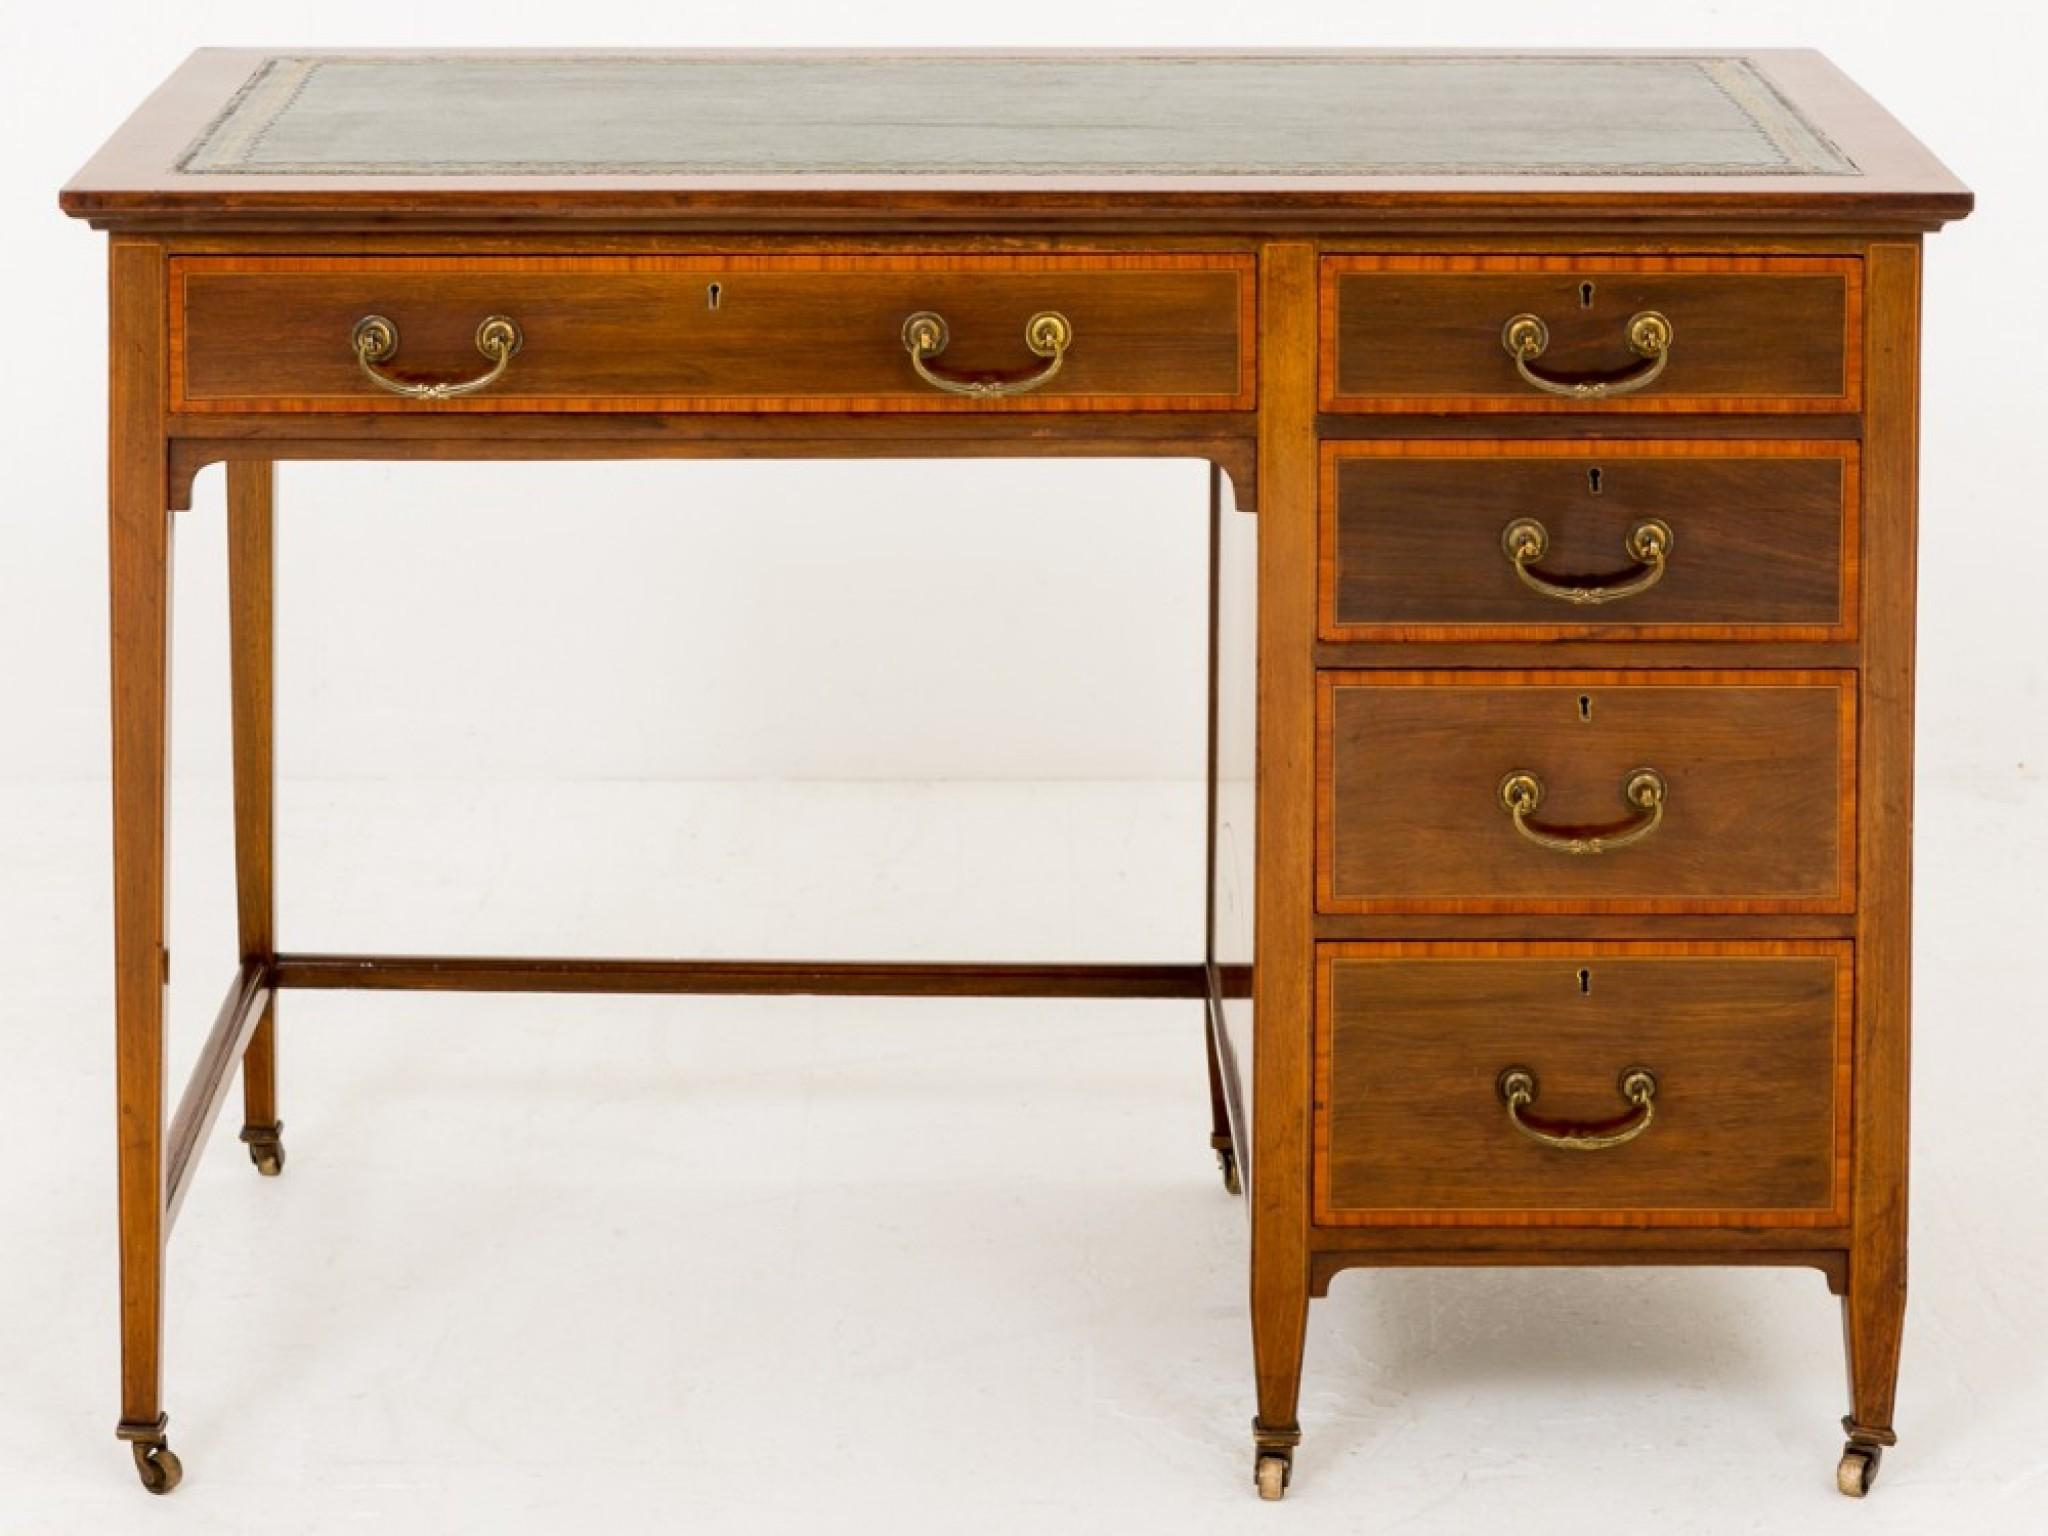 Late 19th Century Sheraton Mahogany Desk - Antique Revival Desks Circa 1890 For Sale